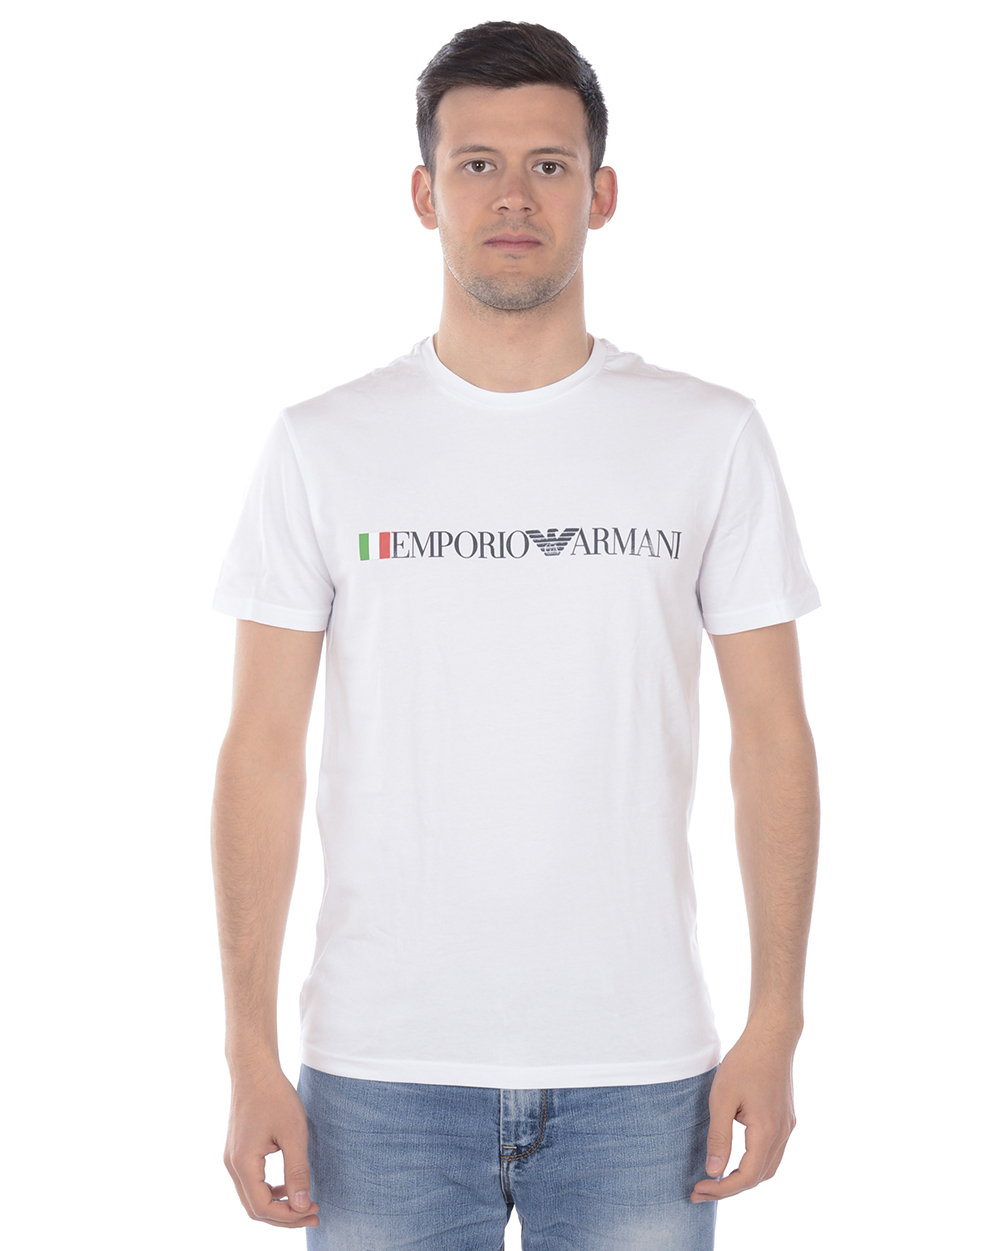 T shirt Maglietta Emporio Armani Sweatshirt Uomo Bianco 110853 9P510 10